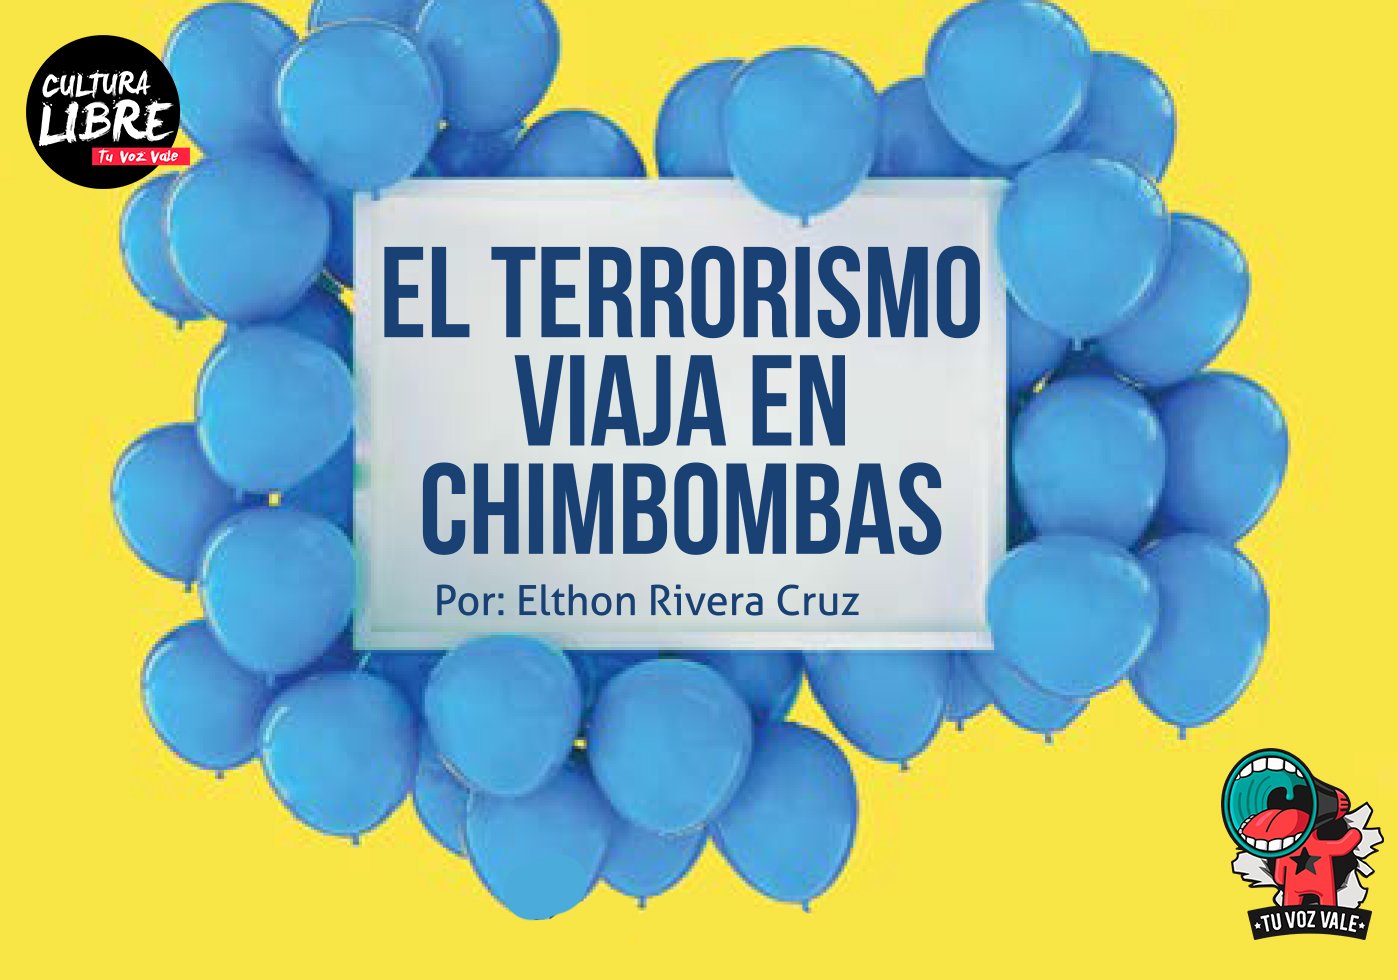 El terrorismo viaja en chimbombas.